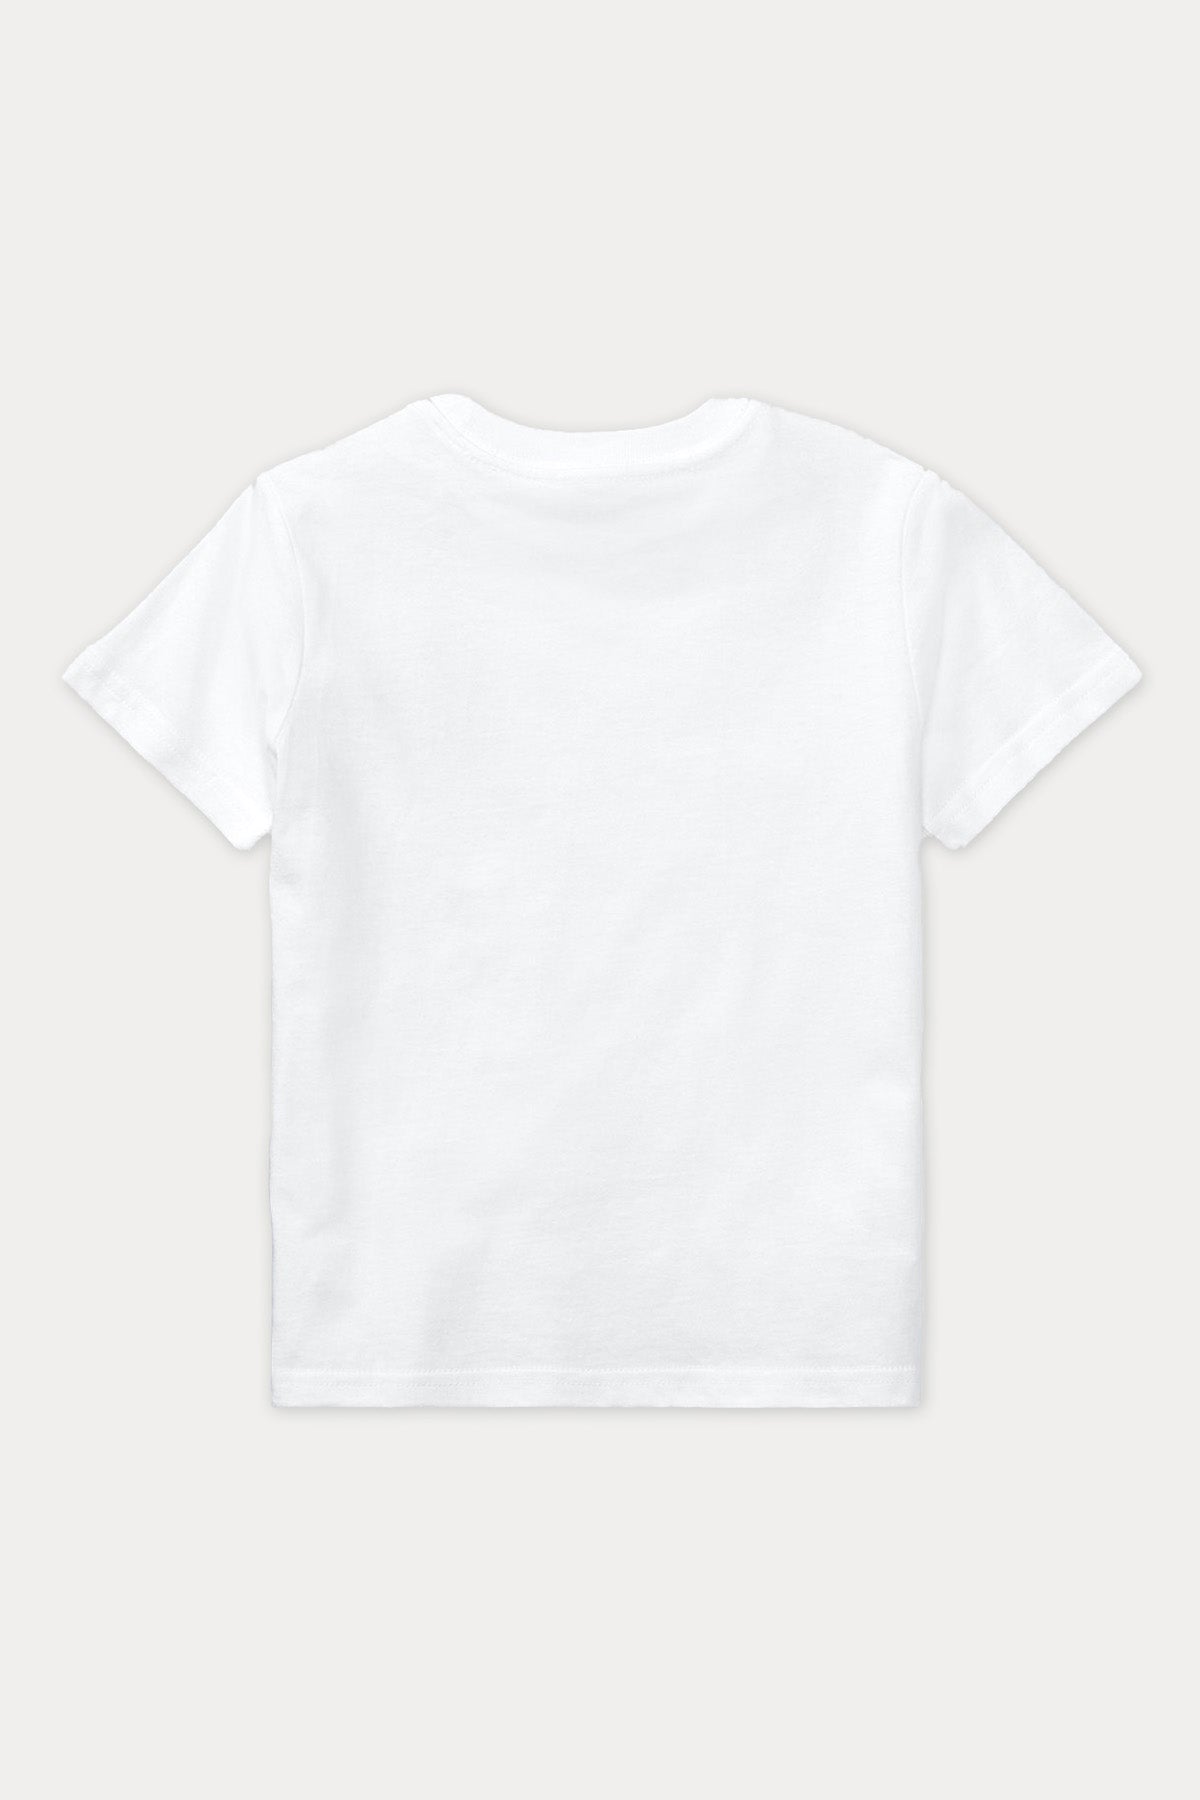 Polo Ralph Lauren Kids 2-7 Yaş Unisex Çocuk Yuvarlak Yaka T-shirt